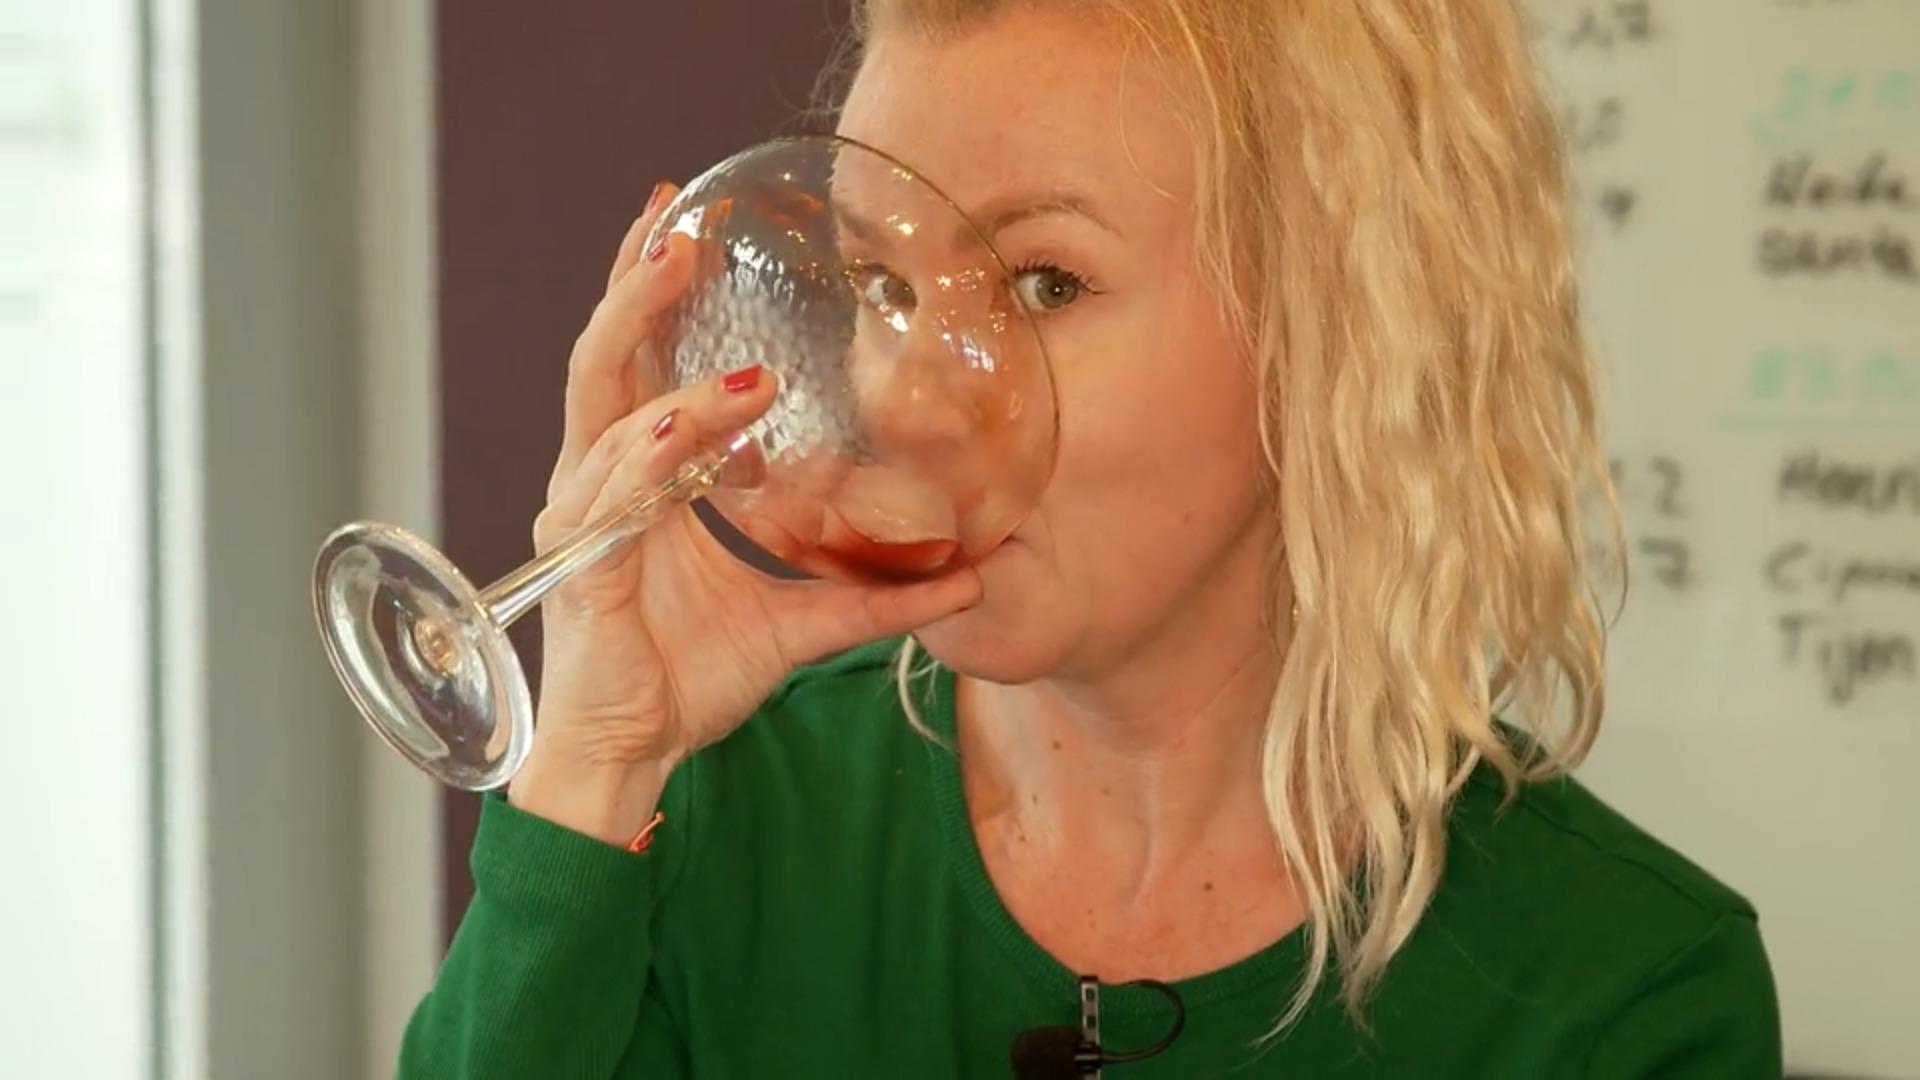 La bebida promete intoxicación sin resaca y un periodista de RTL realiza la prueba